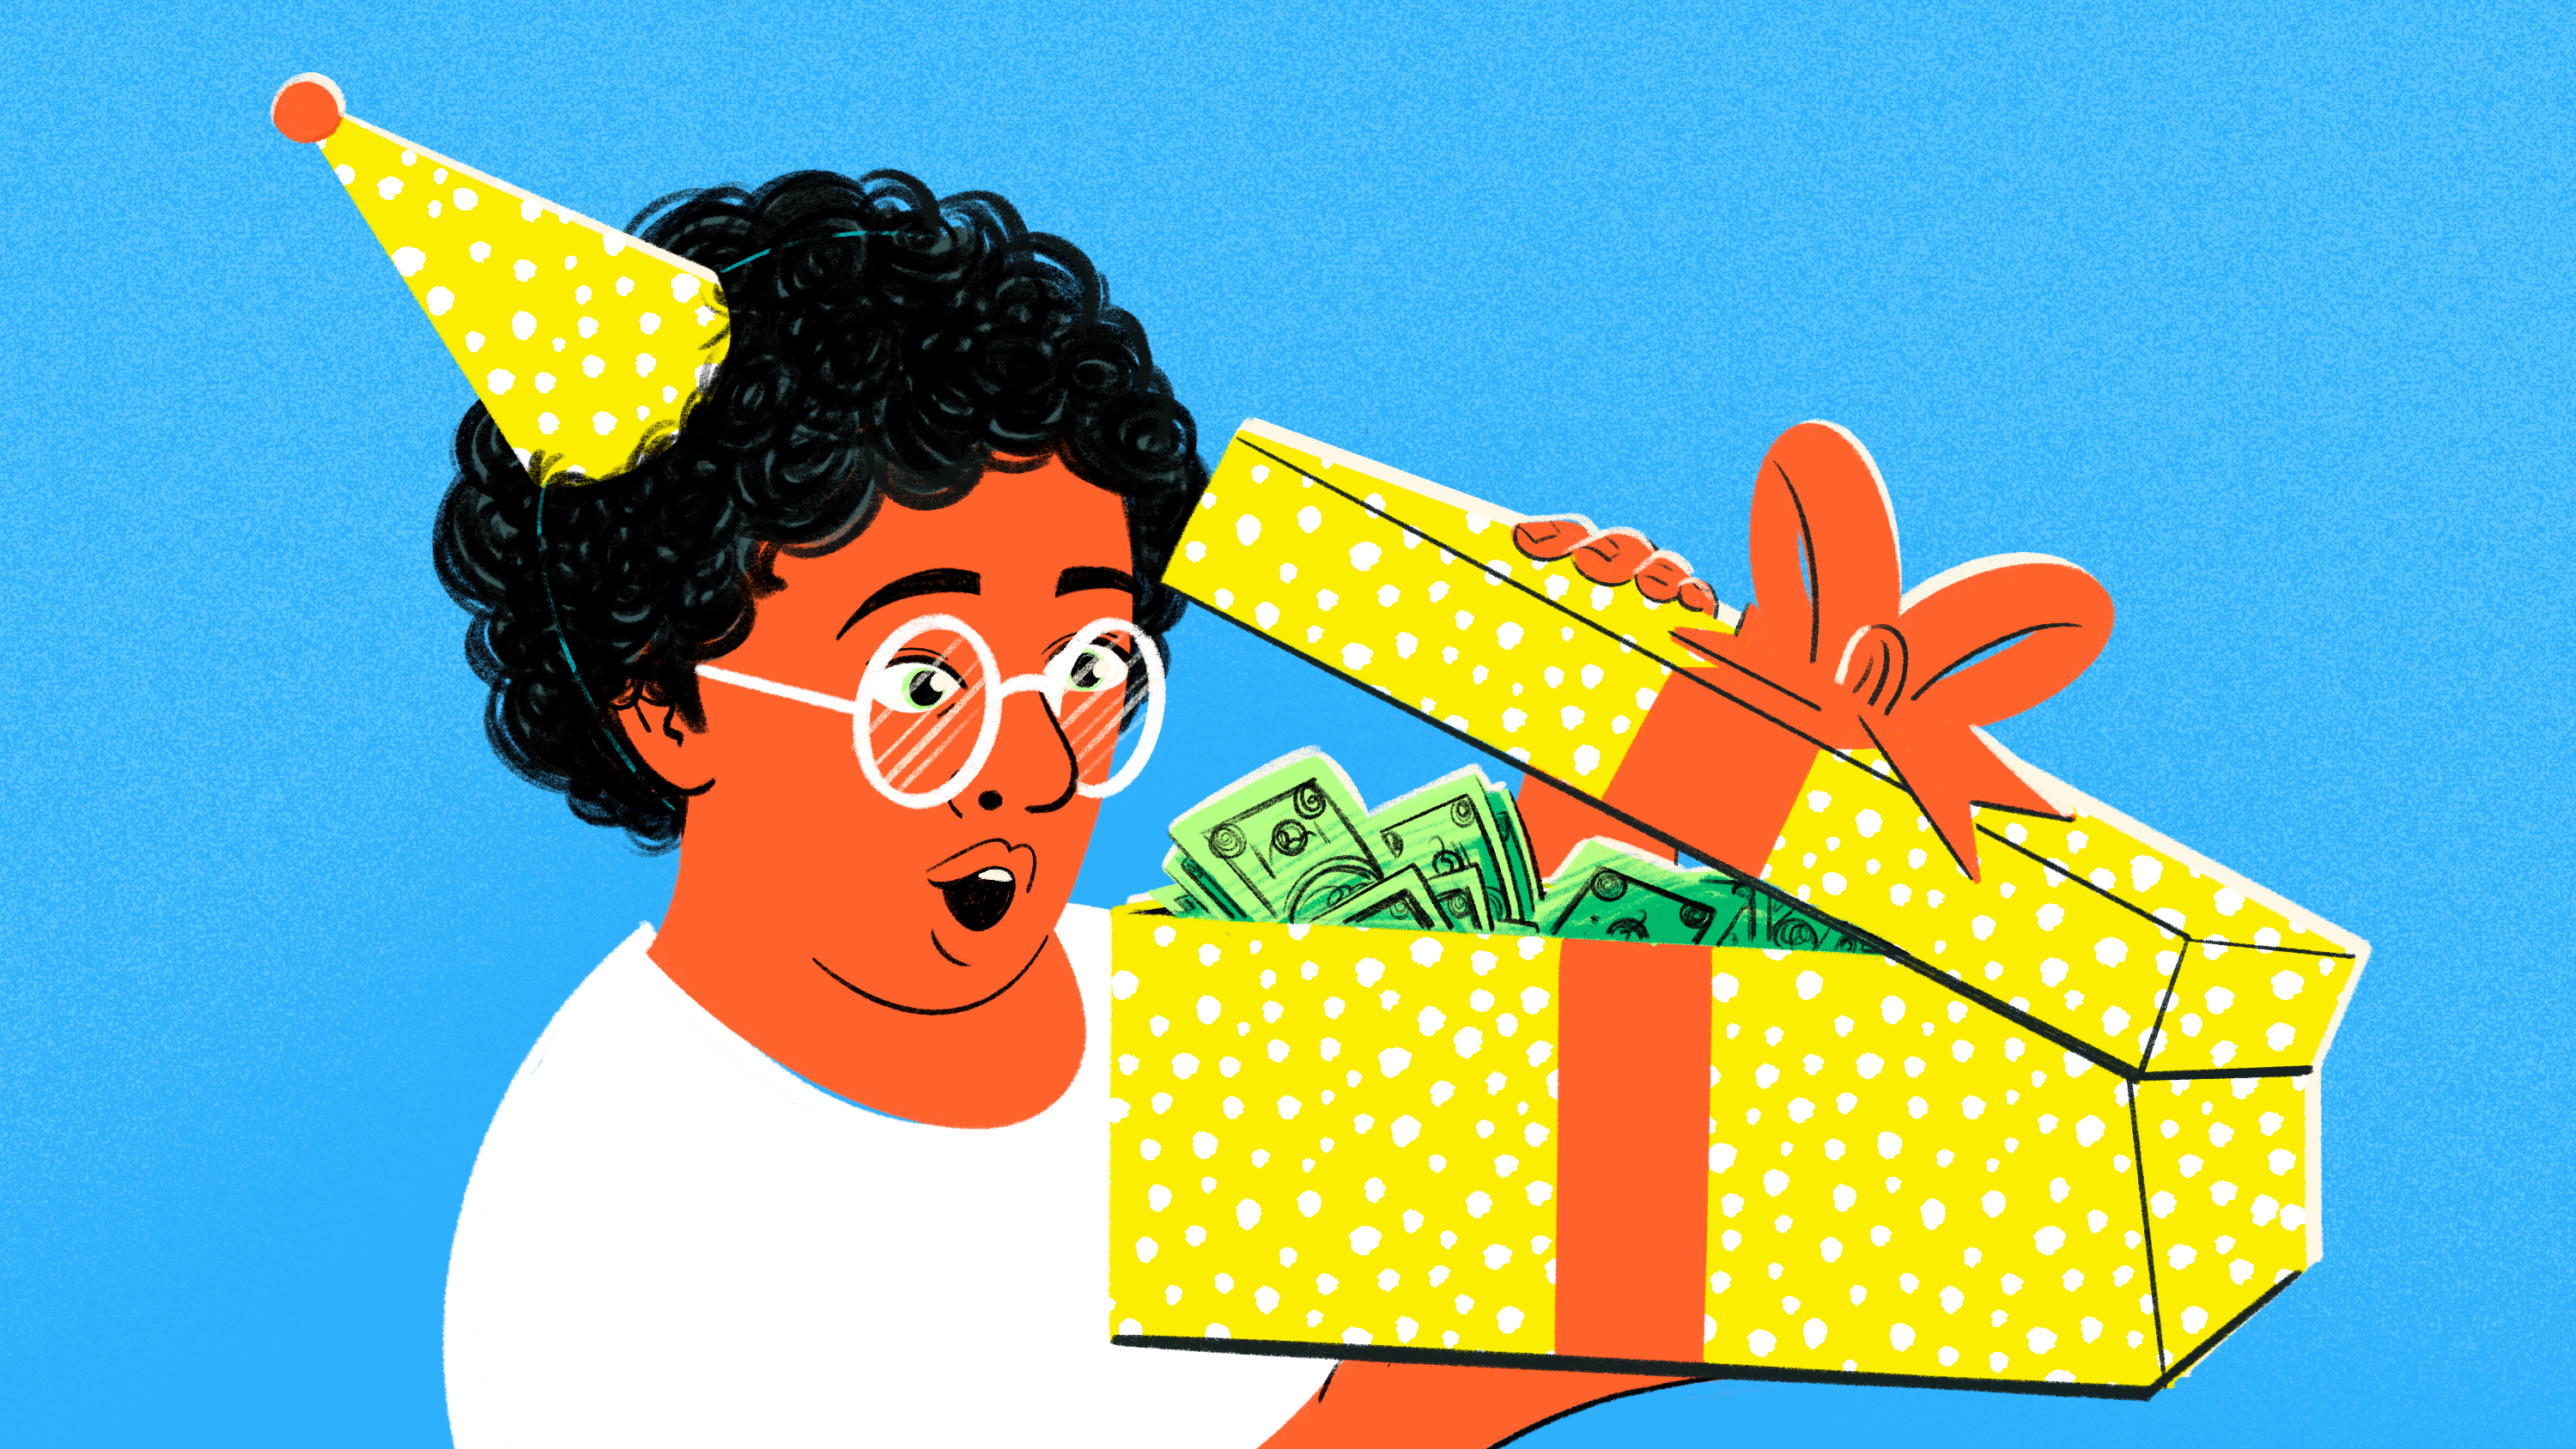 Иллюстрация человека в праздничной шляпе, открывающего коробку с деньгами.